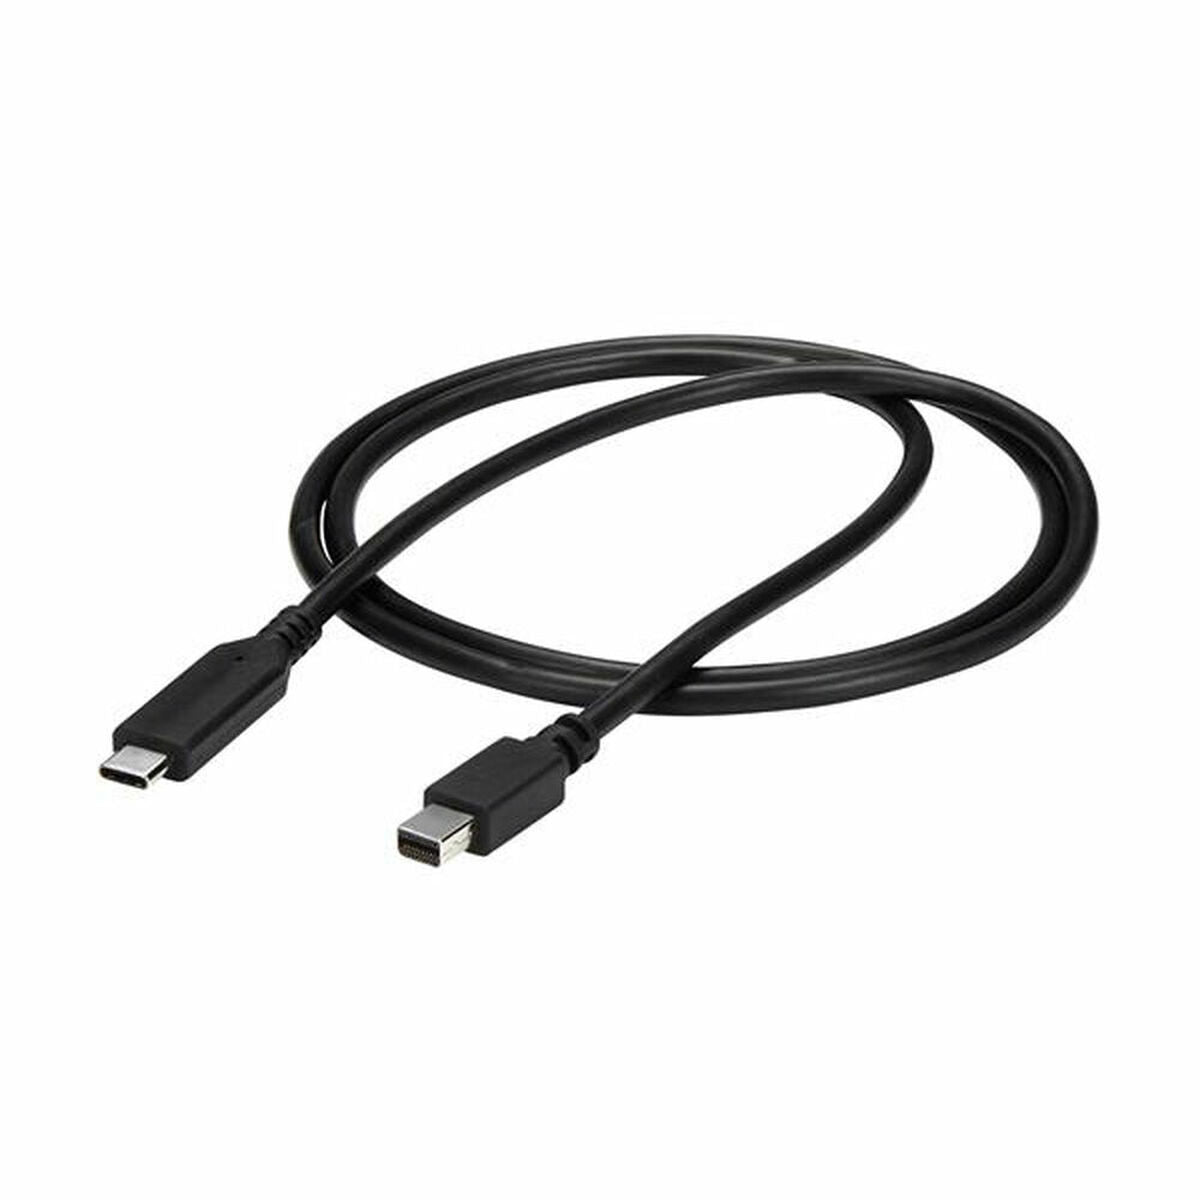 USB C to Mini DisplayPort Adapter Startech CDP2MDPMM1MB Black 1 m (Refurbished A+)